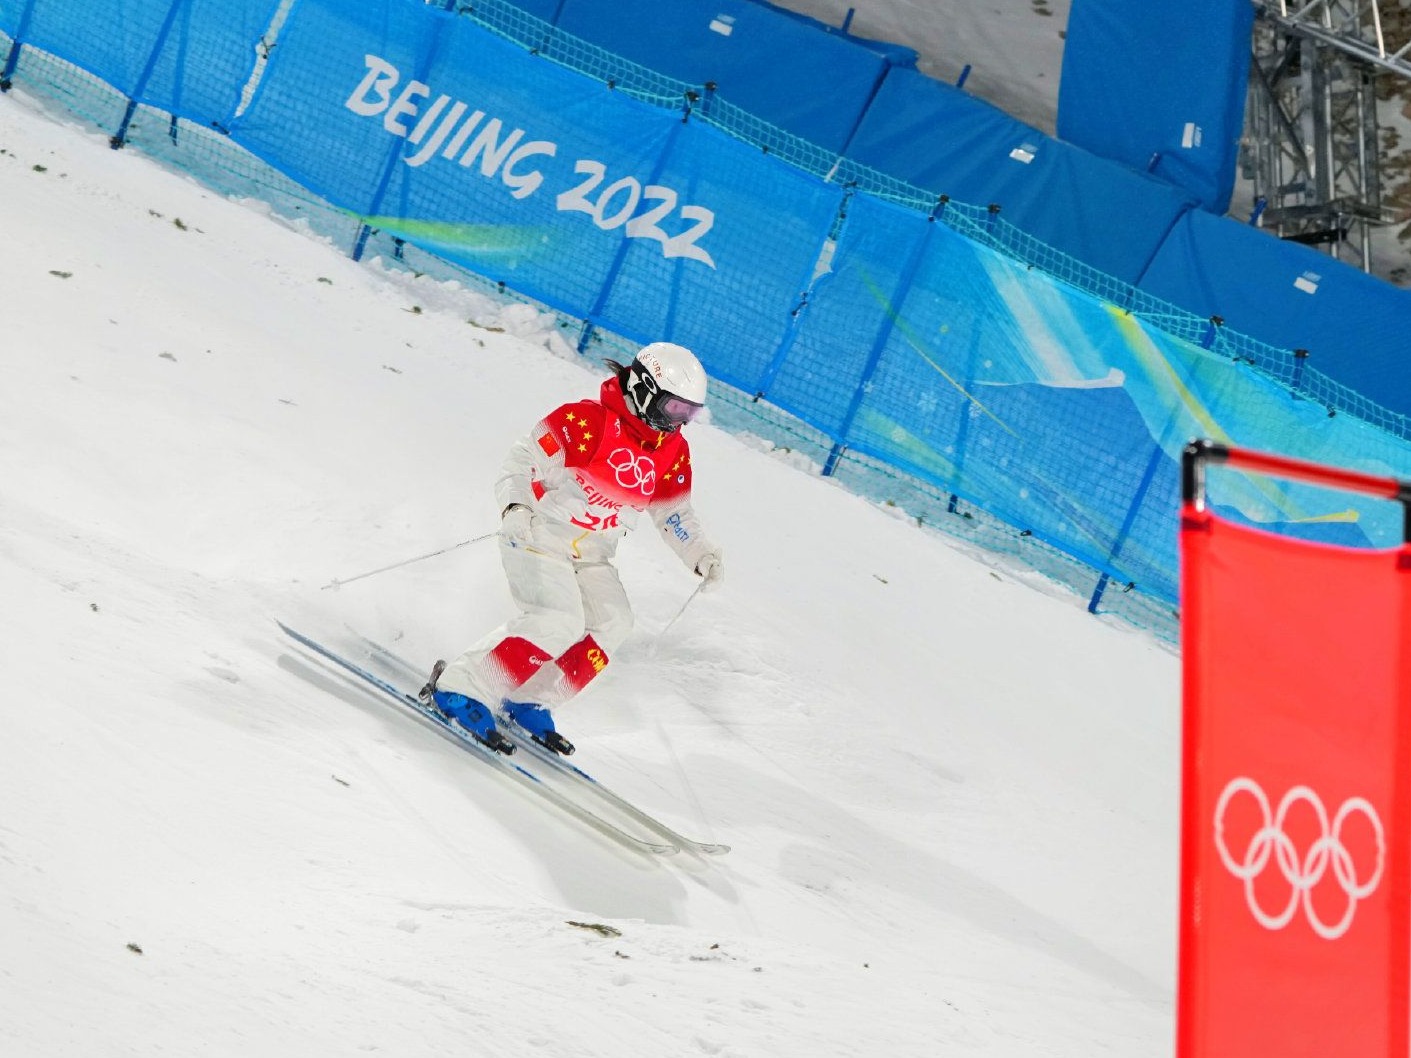 冬奥自由式滑雪雪上技巧开赛，中国选手李楠暂列第19位